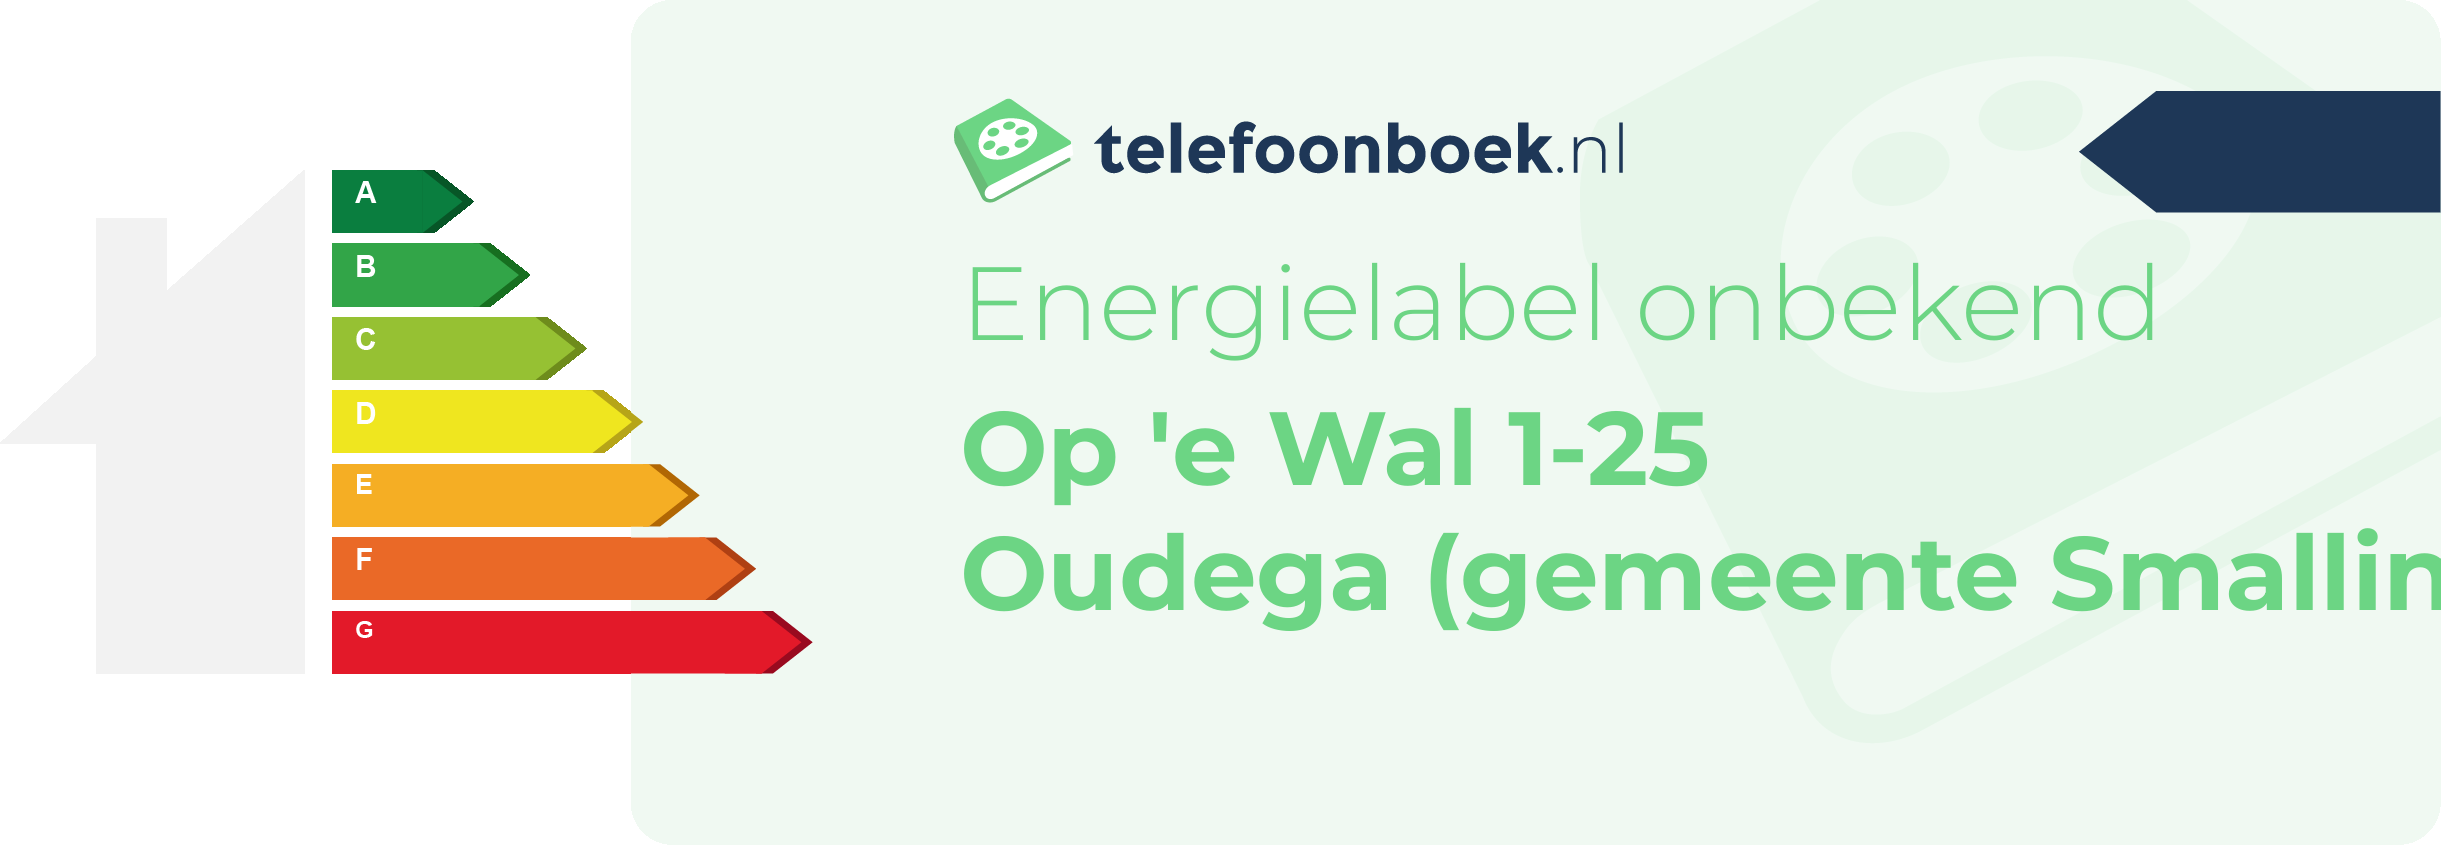 Energielabel Op 'e Wal 1-25 Oudega (gemeente Smallingerland Friesland)